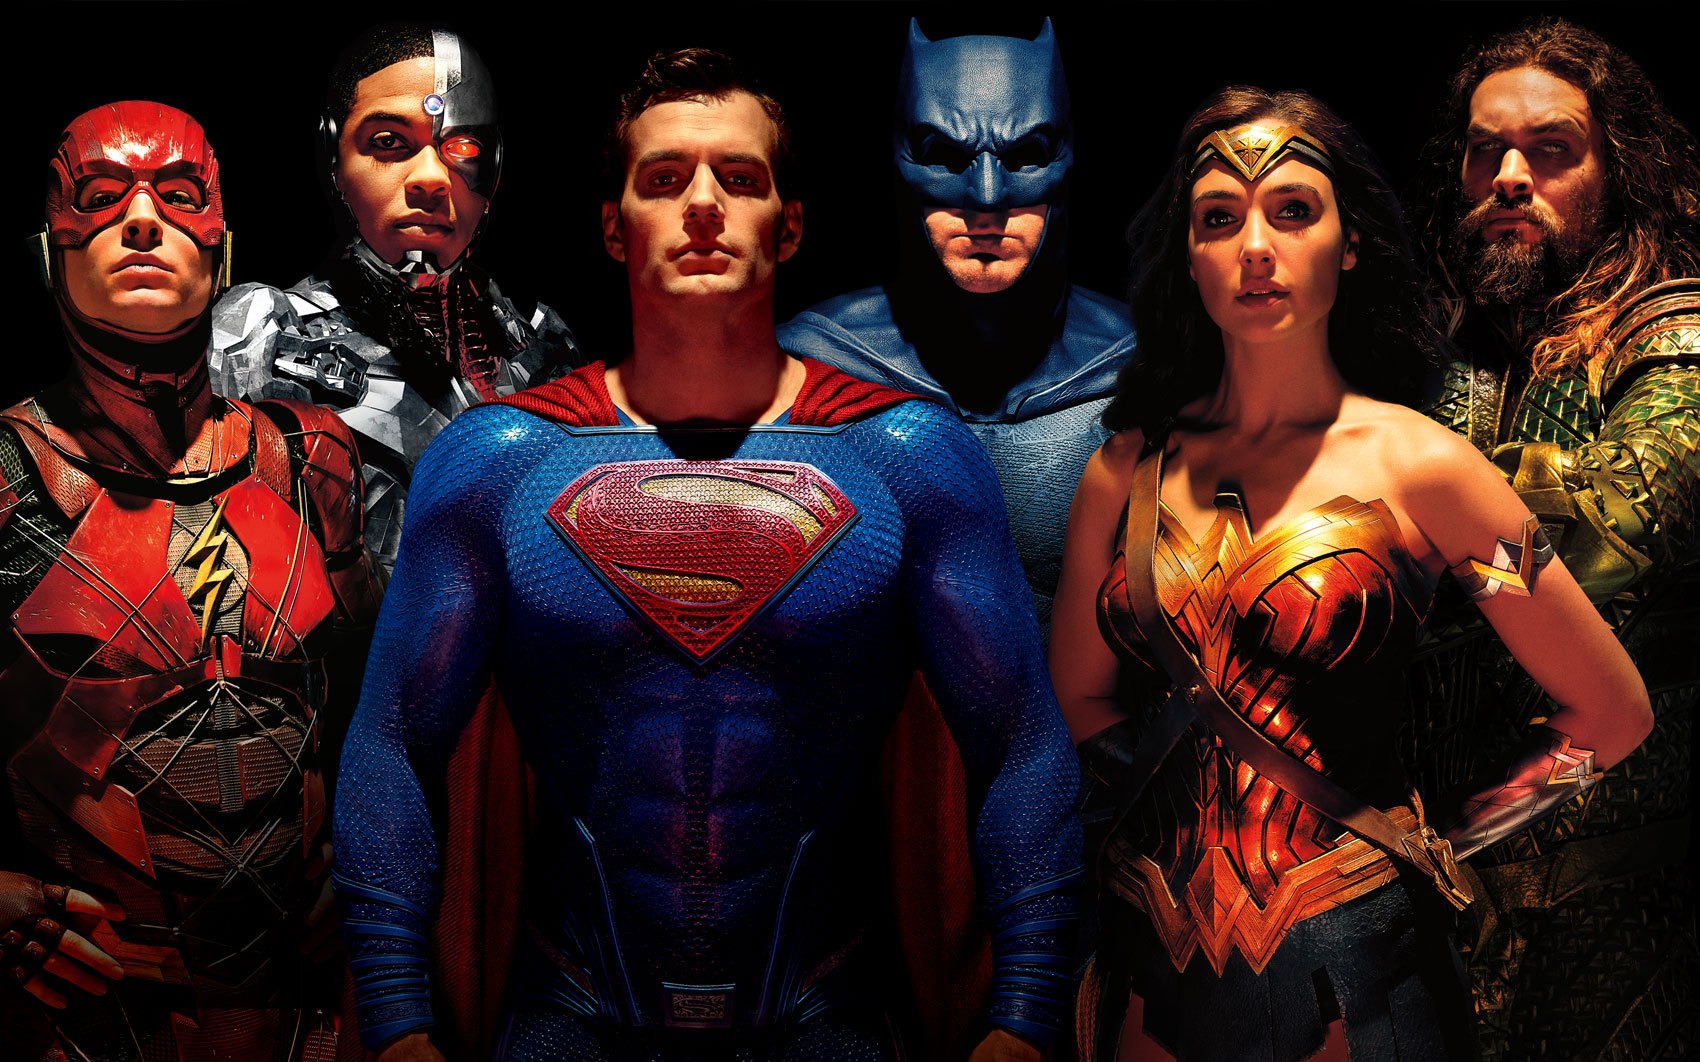 DC Filmes | Insider diz que provavelmente a sequência de “Liga da Justiça” não vai acontecer